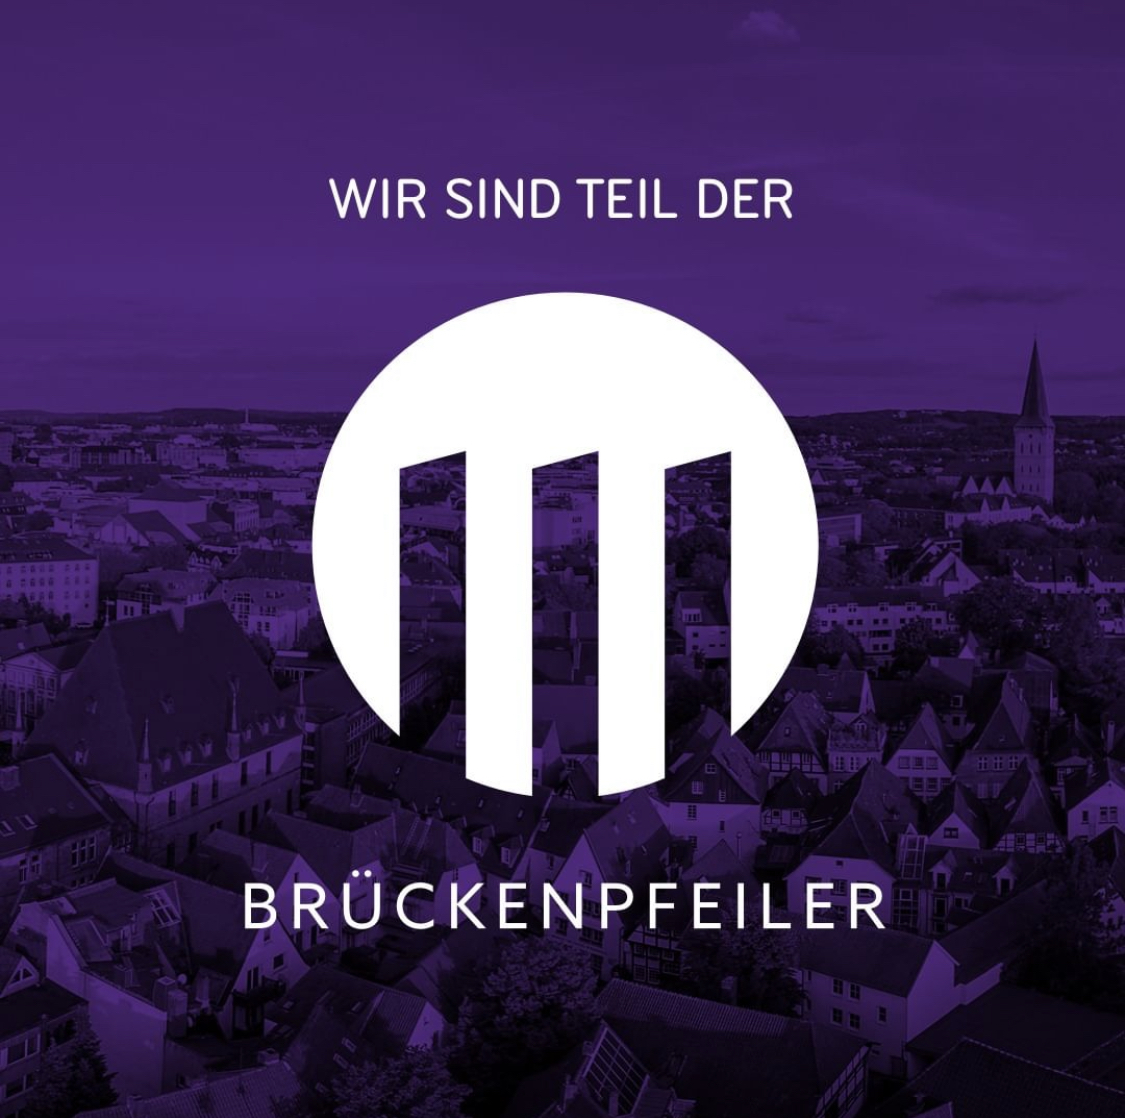 Die Brückenpfeiler eG wurde im Spätsommer von acht regional verwurzelten Unternehmern und Personen gegründet, denen stark daran gelegen ist, die Stadt und die Region Osnabrück zu stärken.